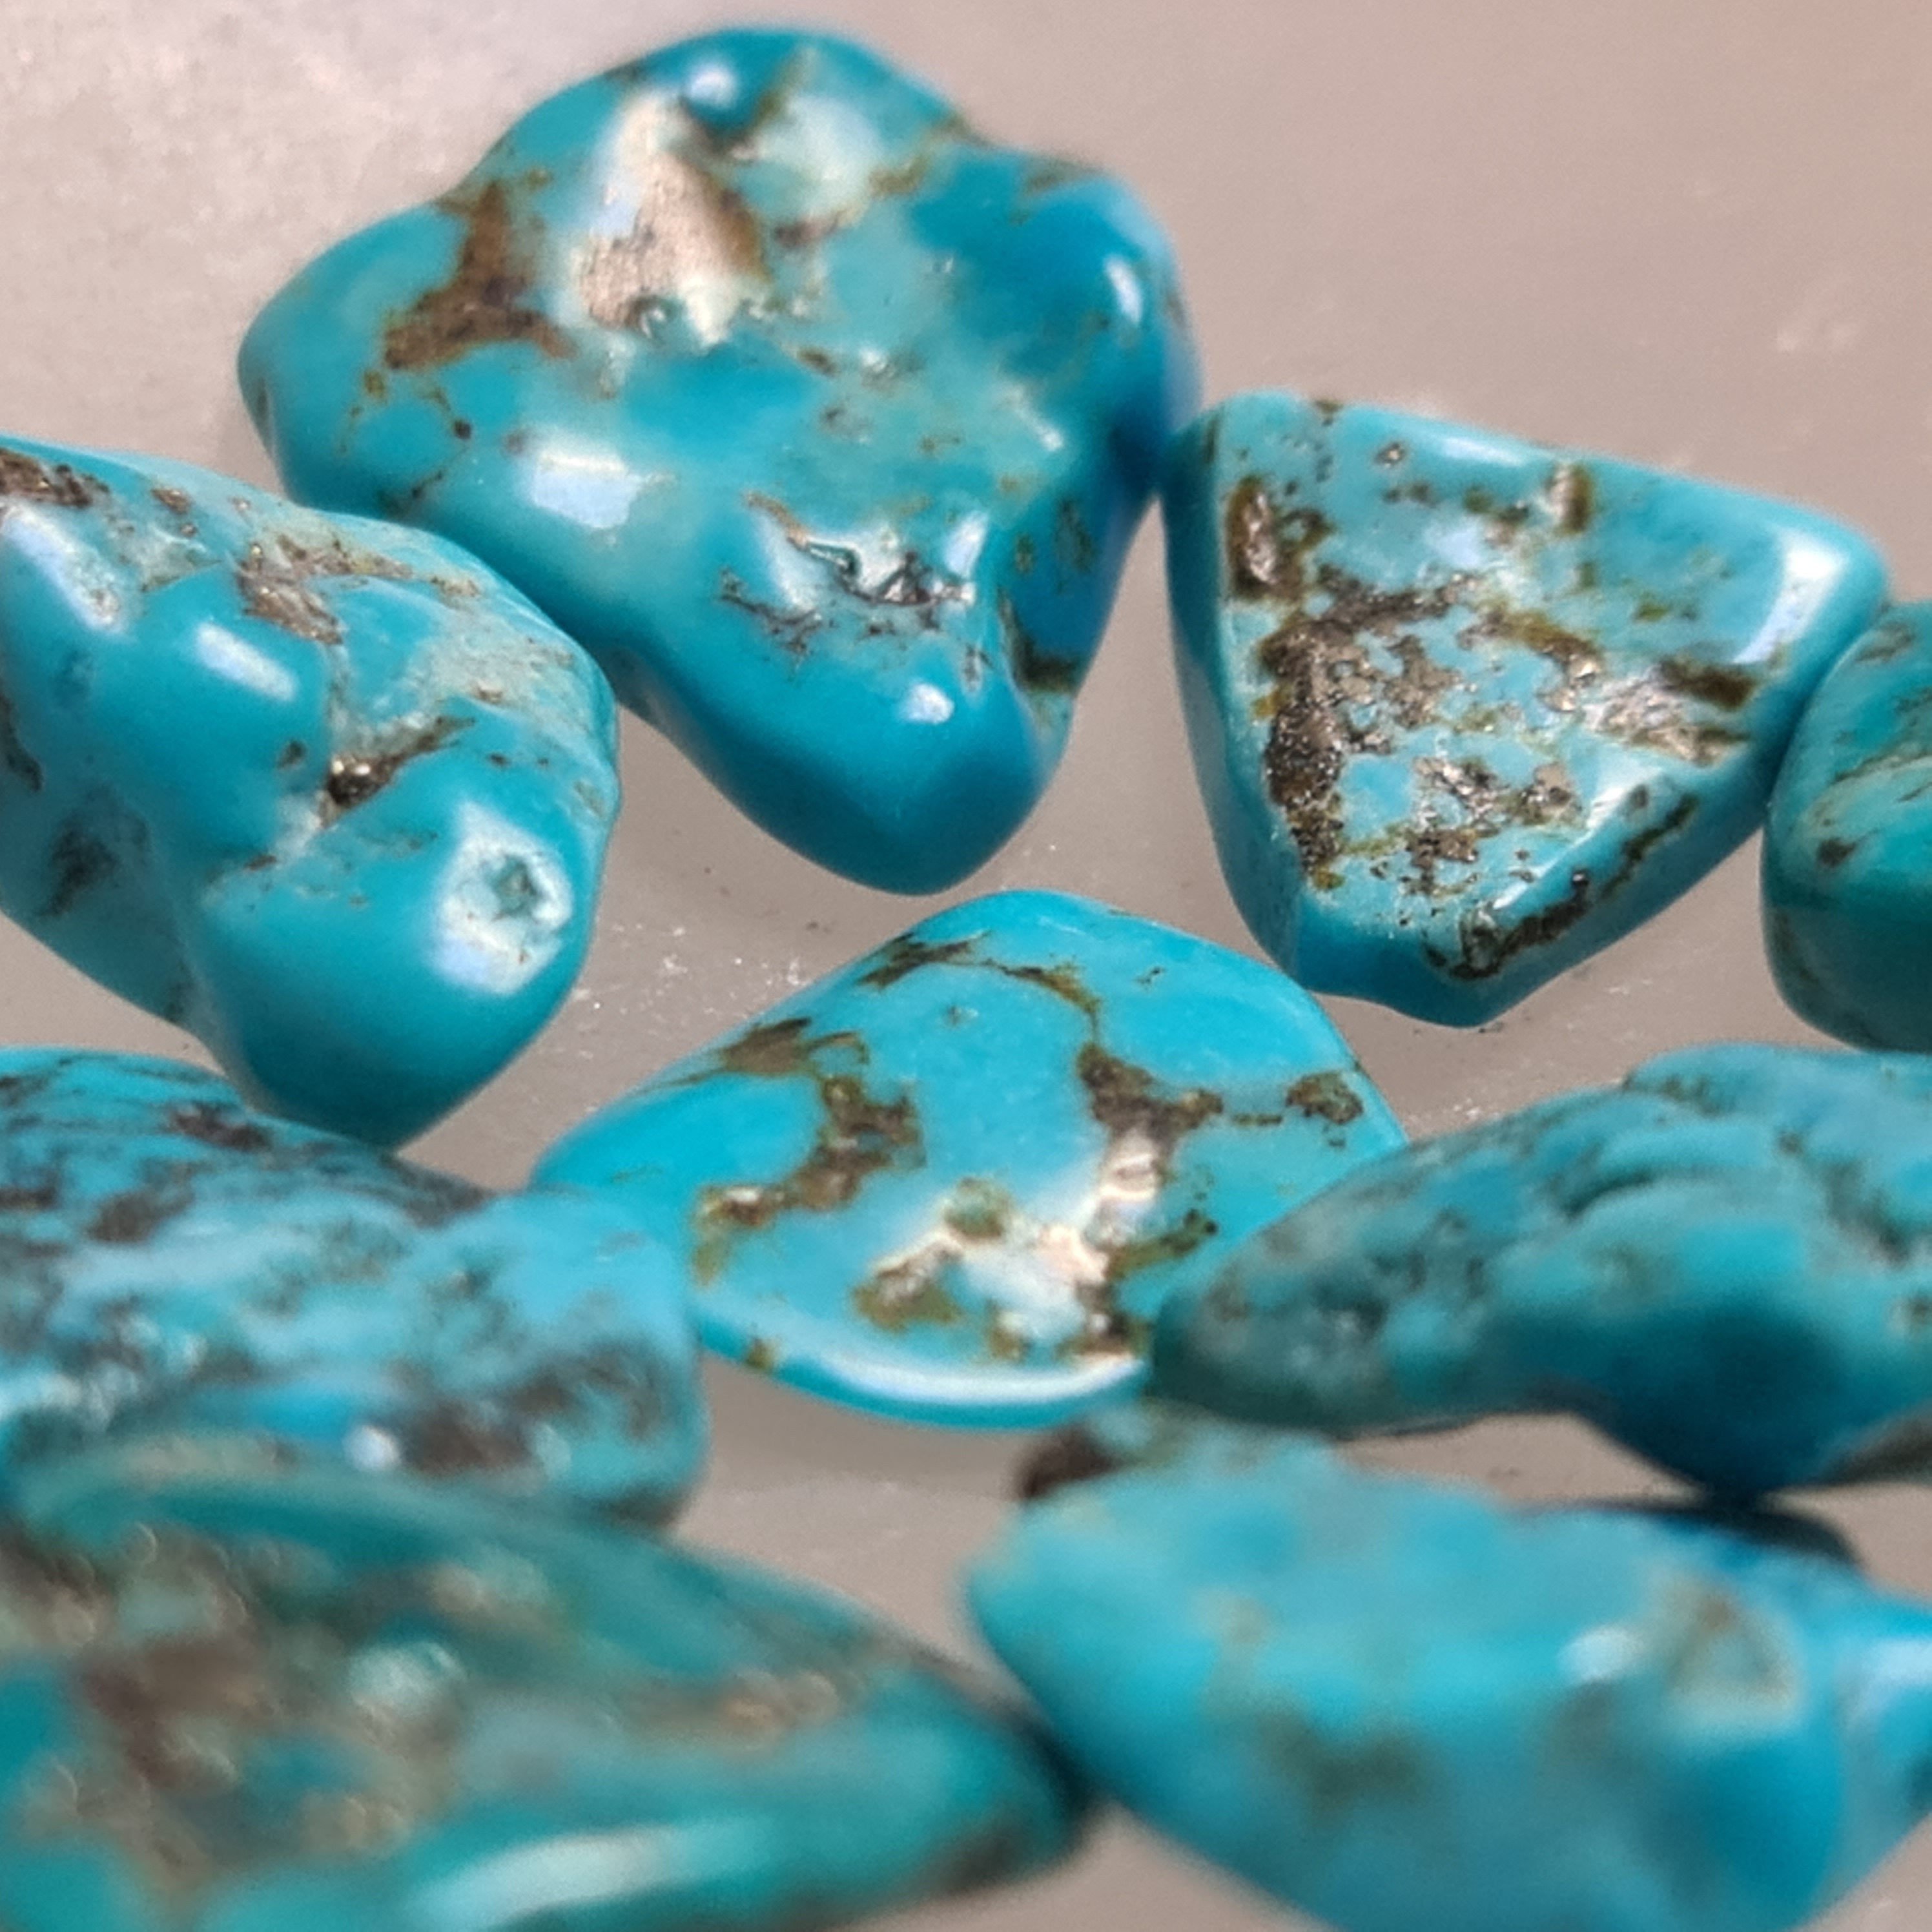 Turquoise Tumbled Stones, Polished Turquoise Tumbled Stones, Tumblestones Turquoise, Healing Crystals, Reiki Stones, Spiritual Stones